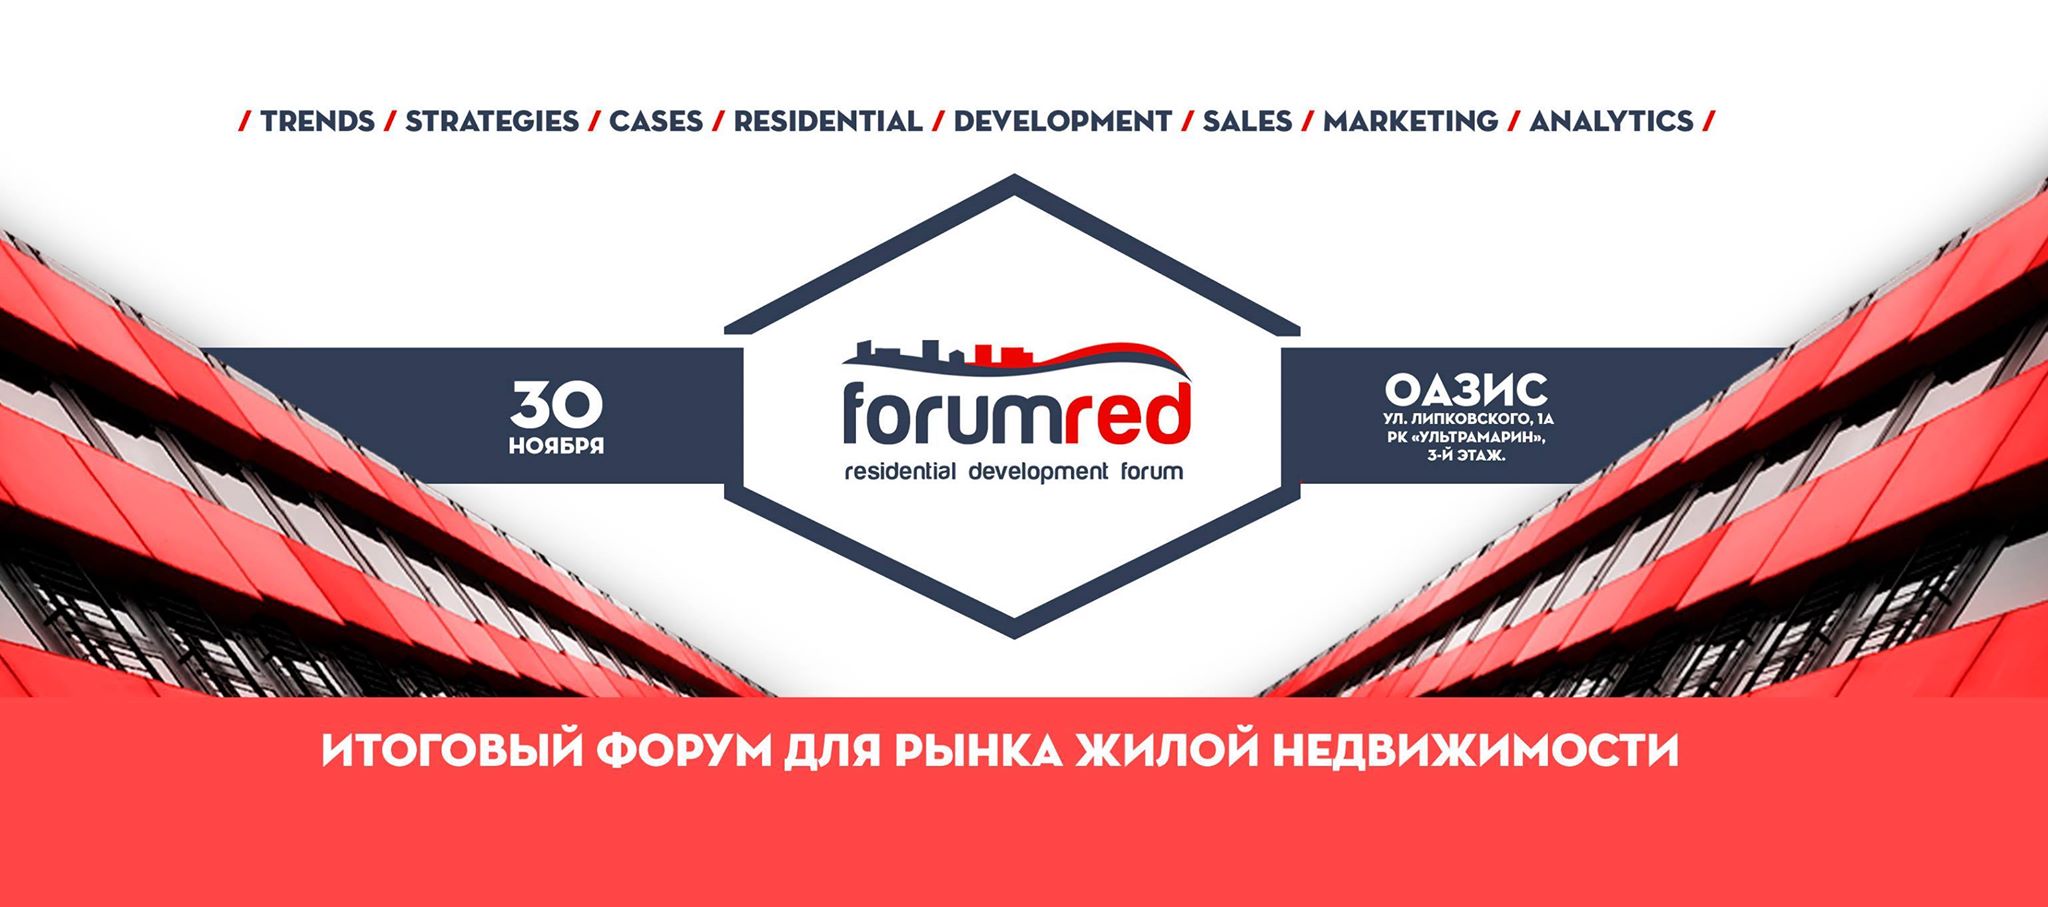 RED Forum соберет лучшие умы девелоперского рынка Киева